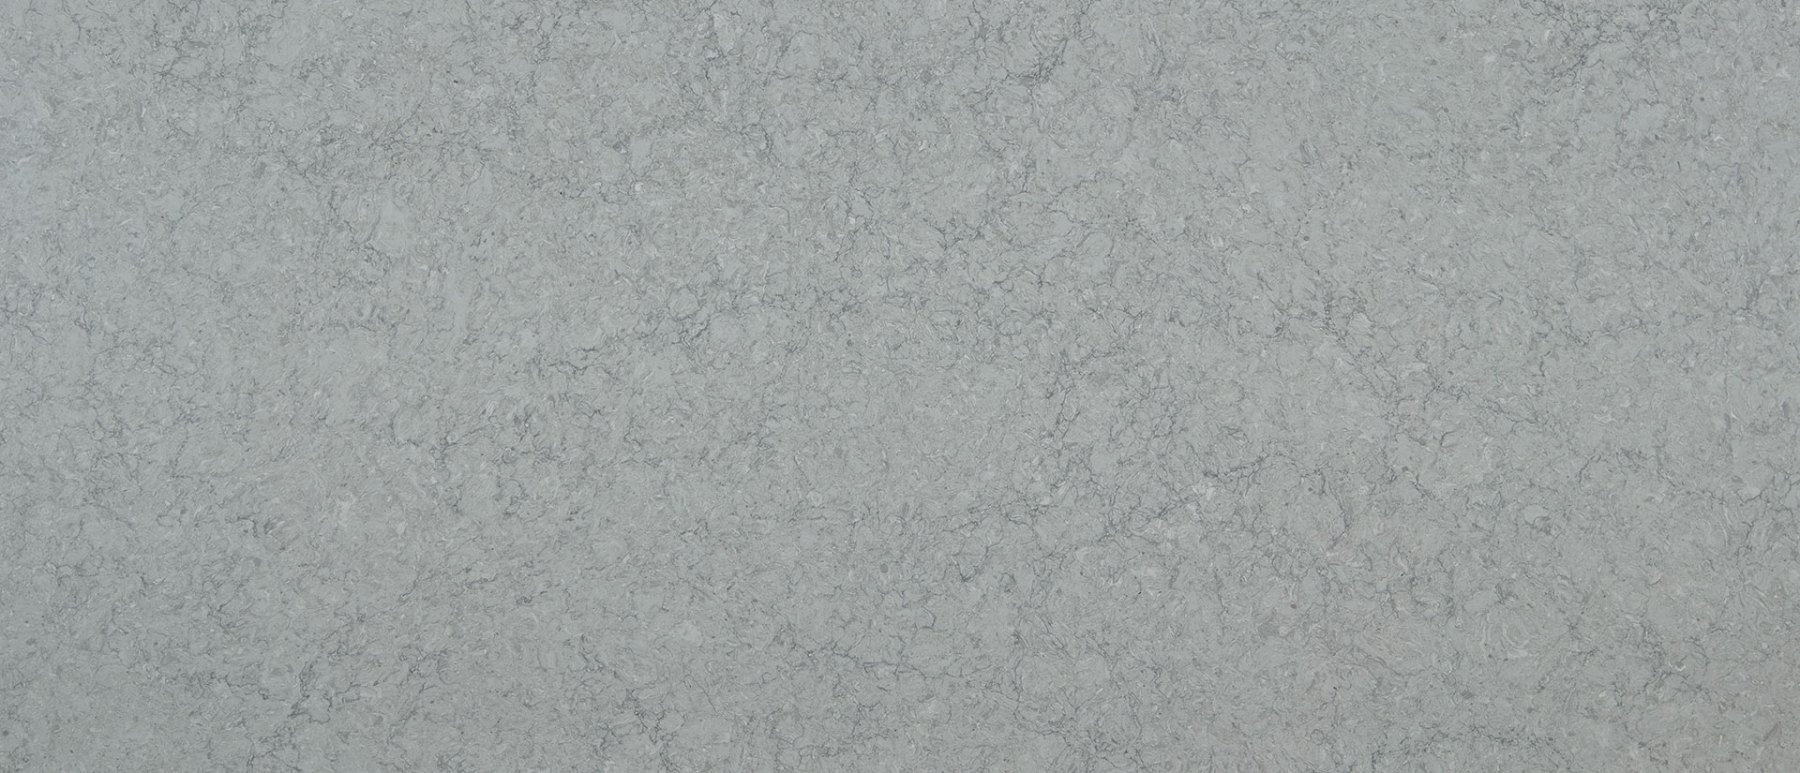 galant-gray-quartz